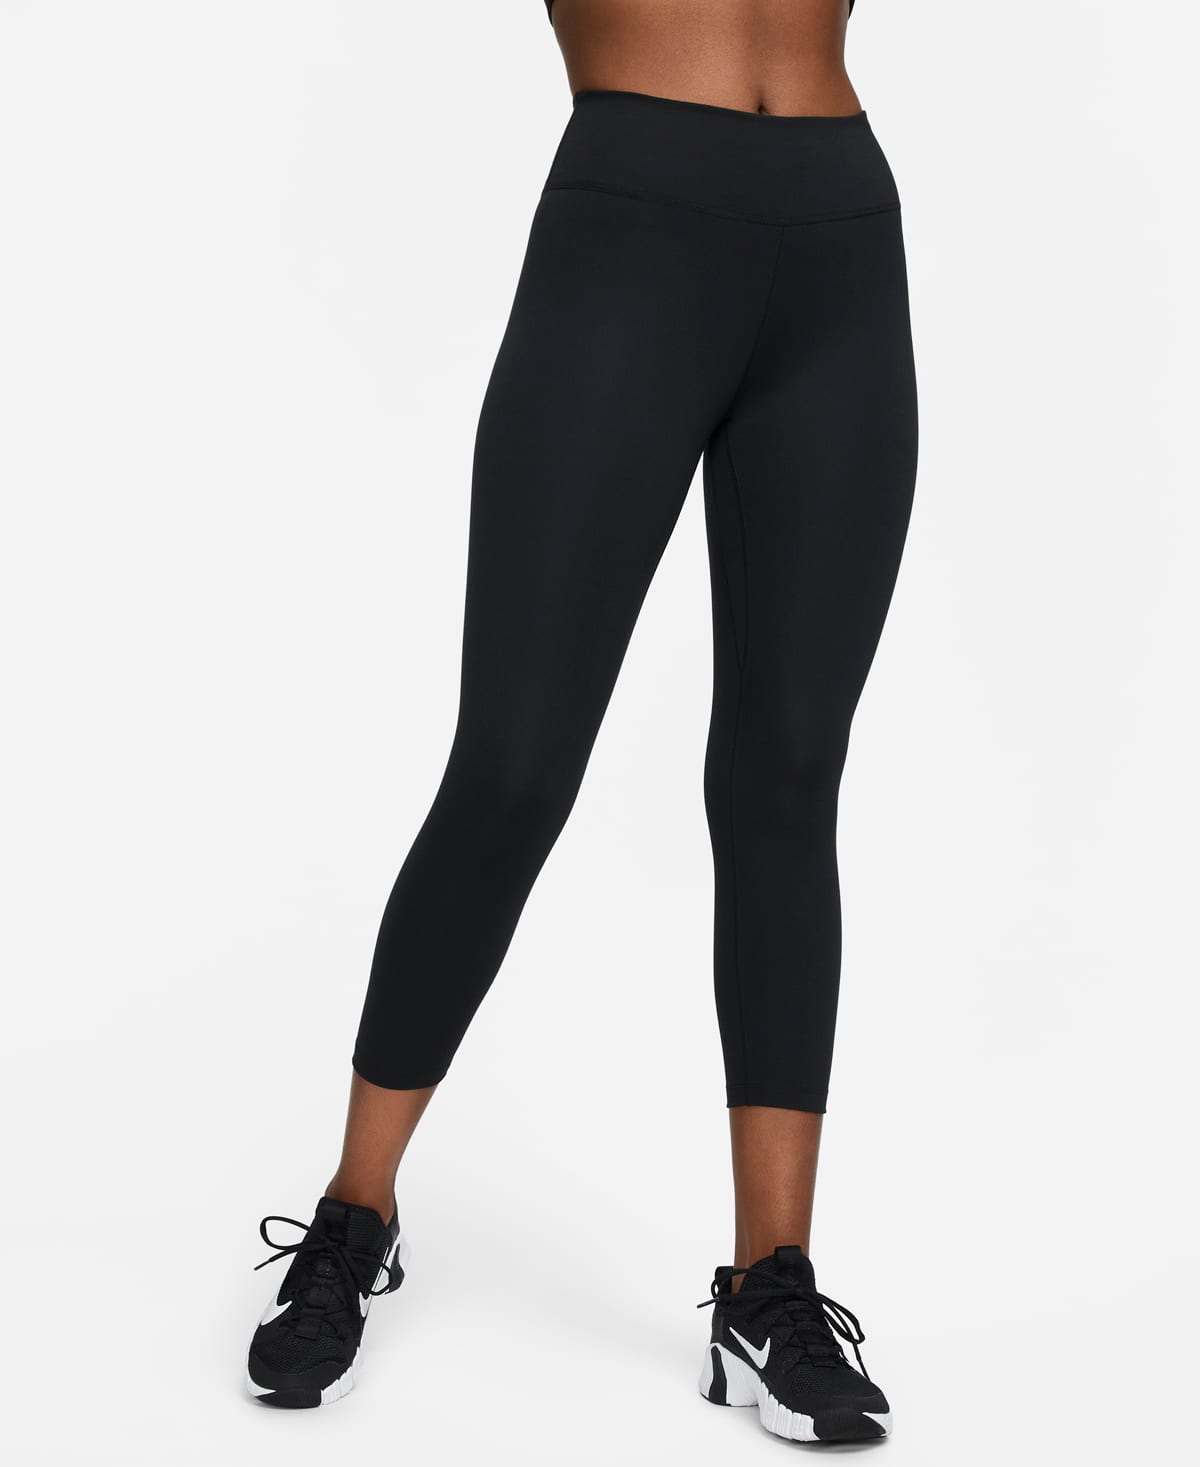 Persona responsable Novedad honor Tabla de tallas de leggings para mujer. Nike